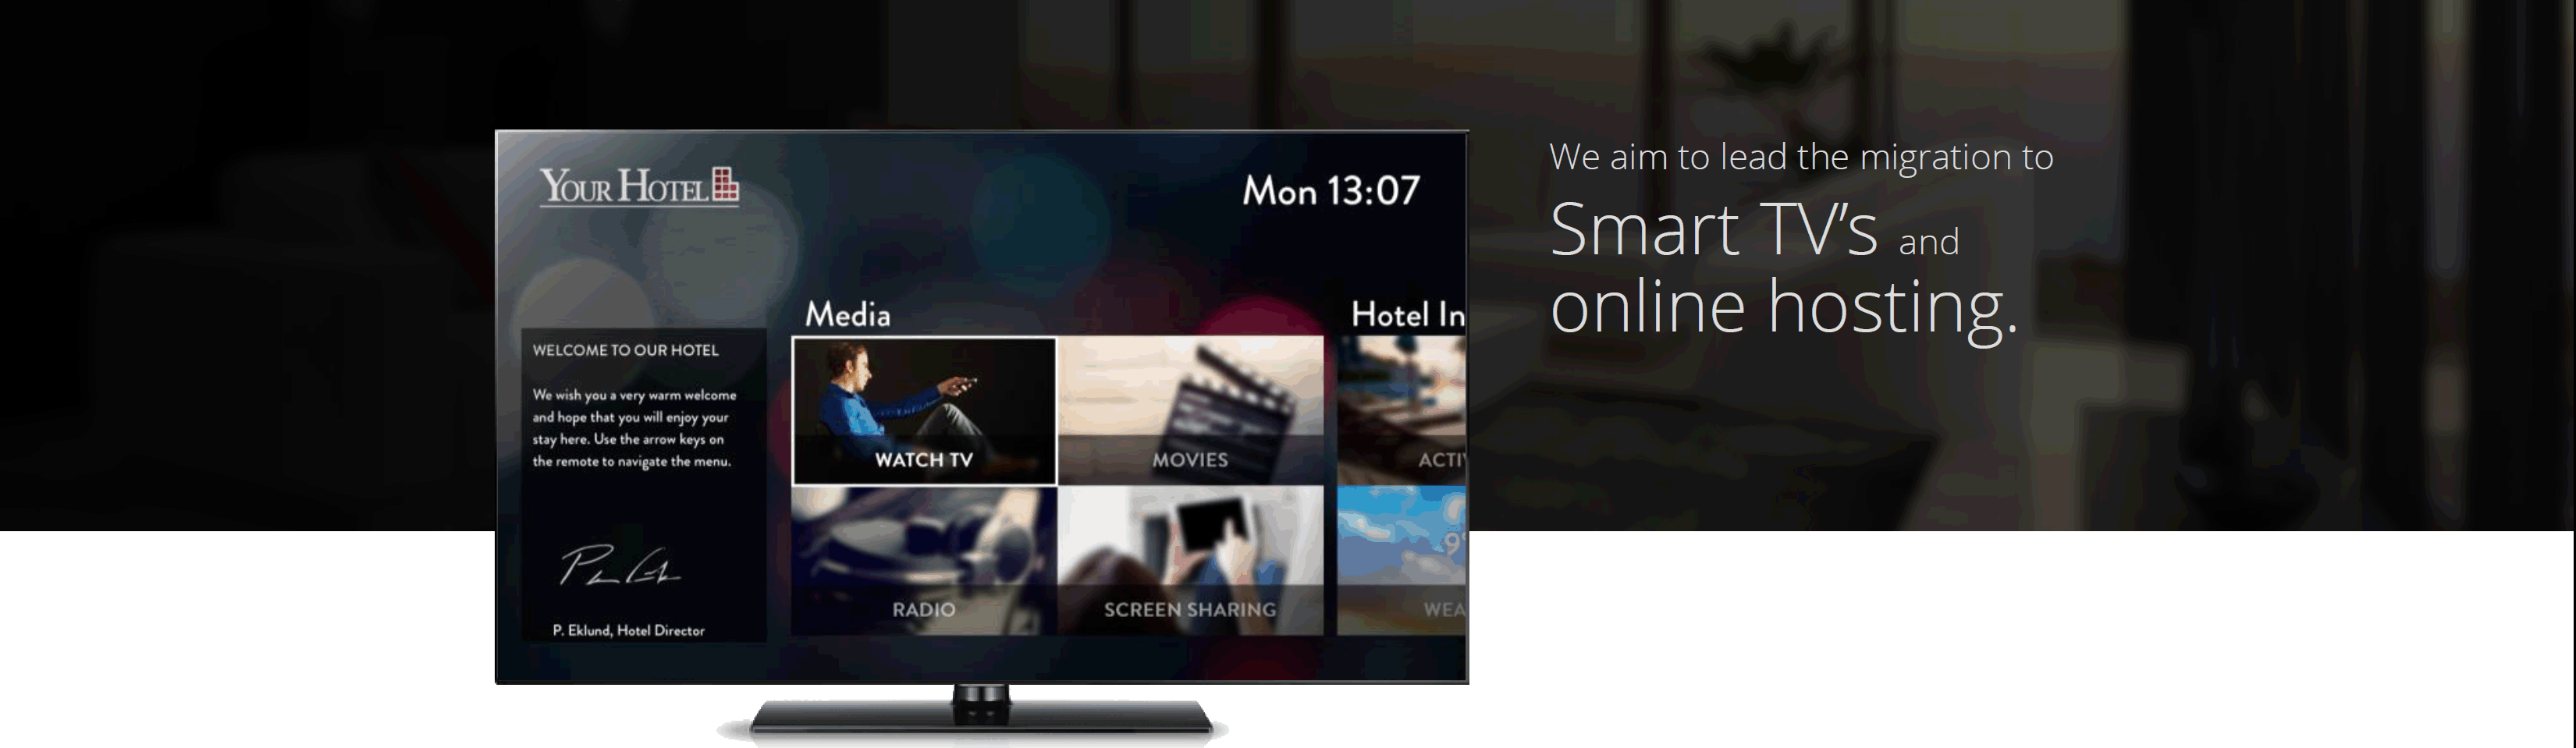 Hibox systems интерактивное гостиничное телевидение